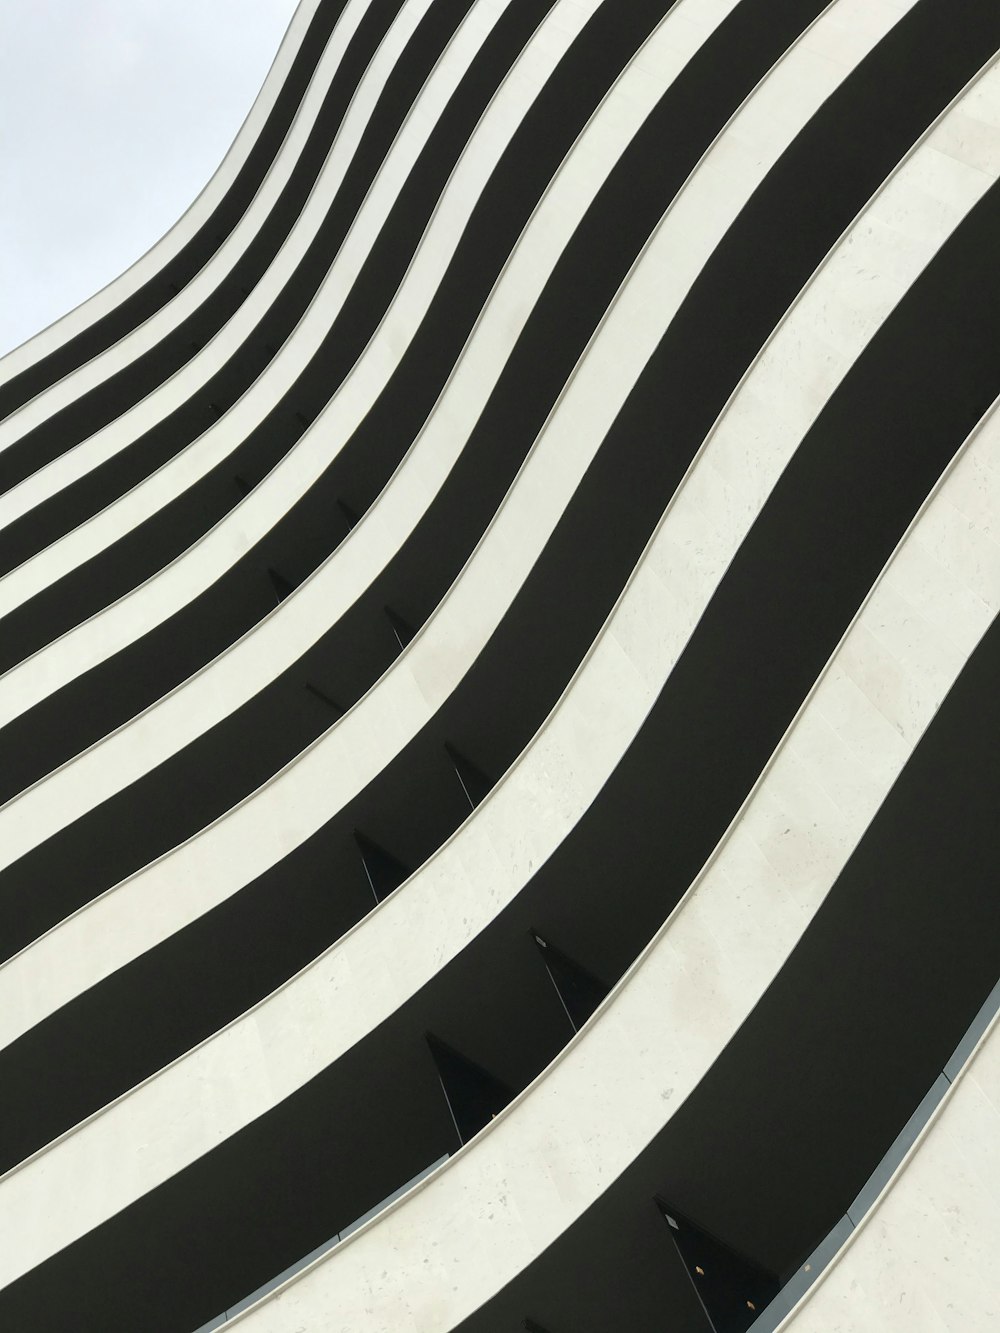 black and white striped concrete building